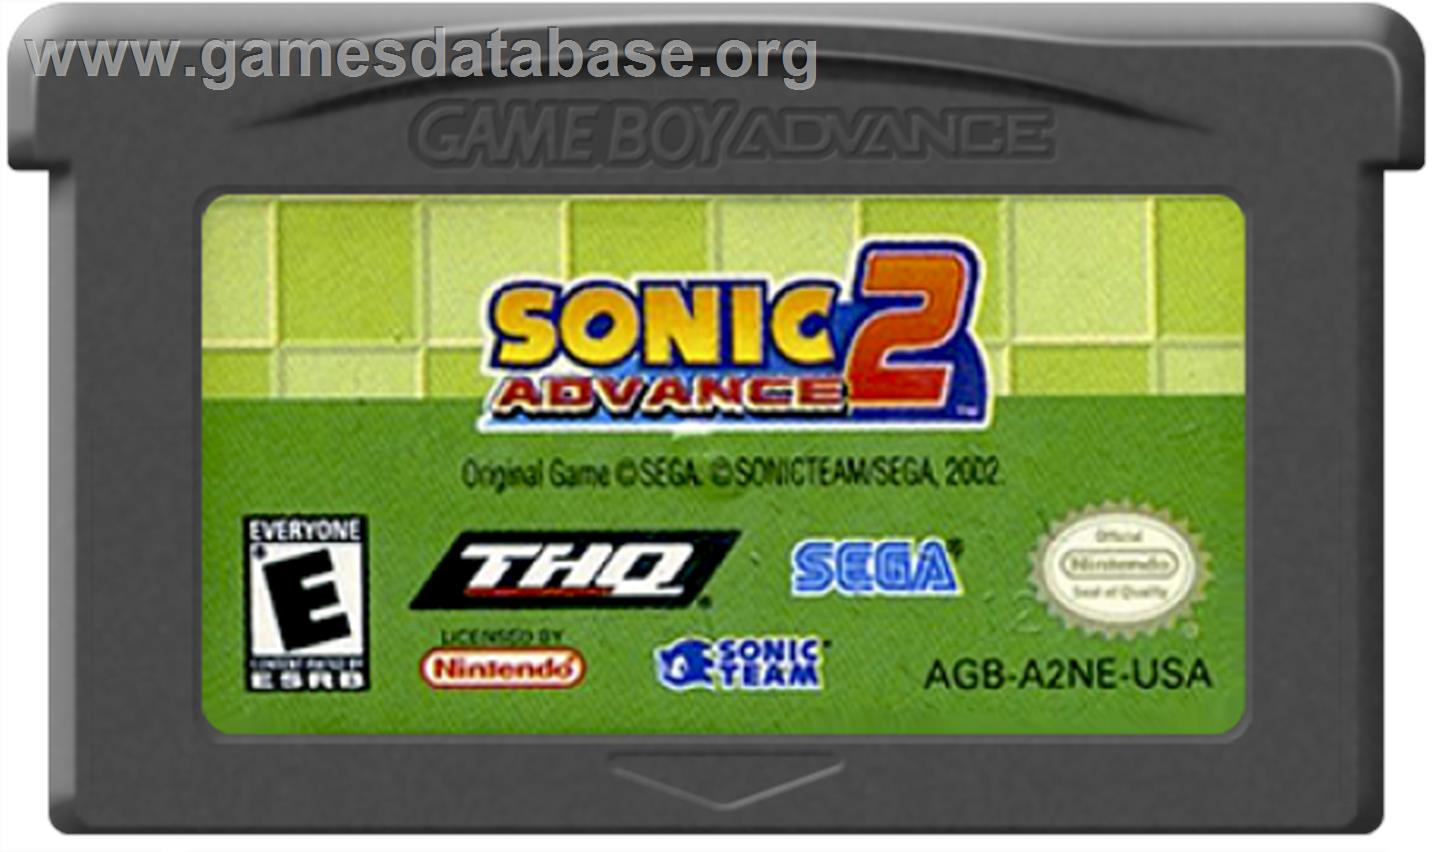 Sonic Advance 2 - Nintendo Game Boy Advance - Artwork - Cartridge